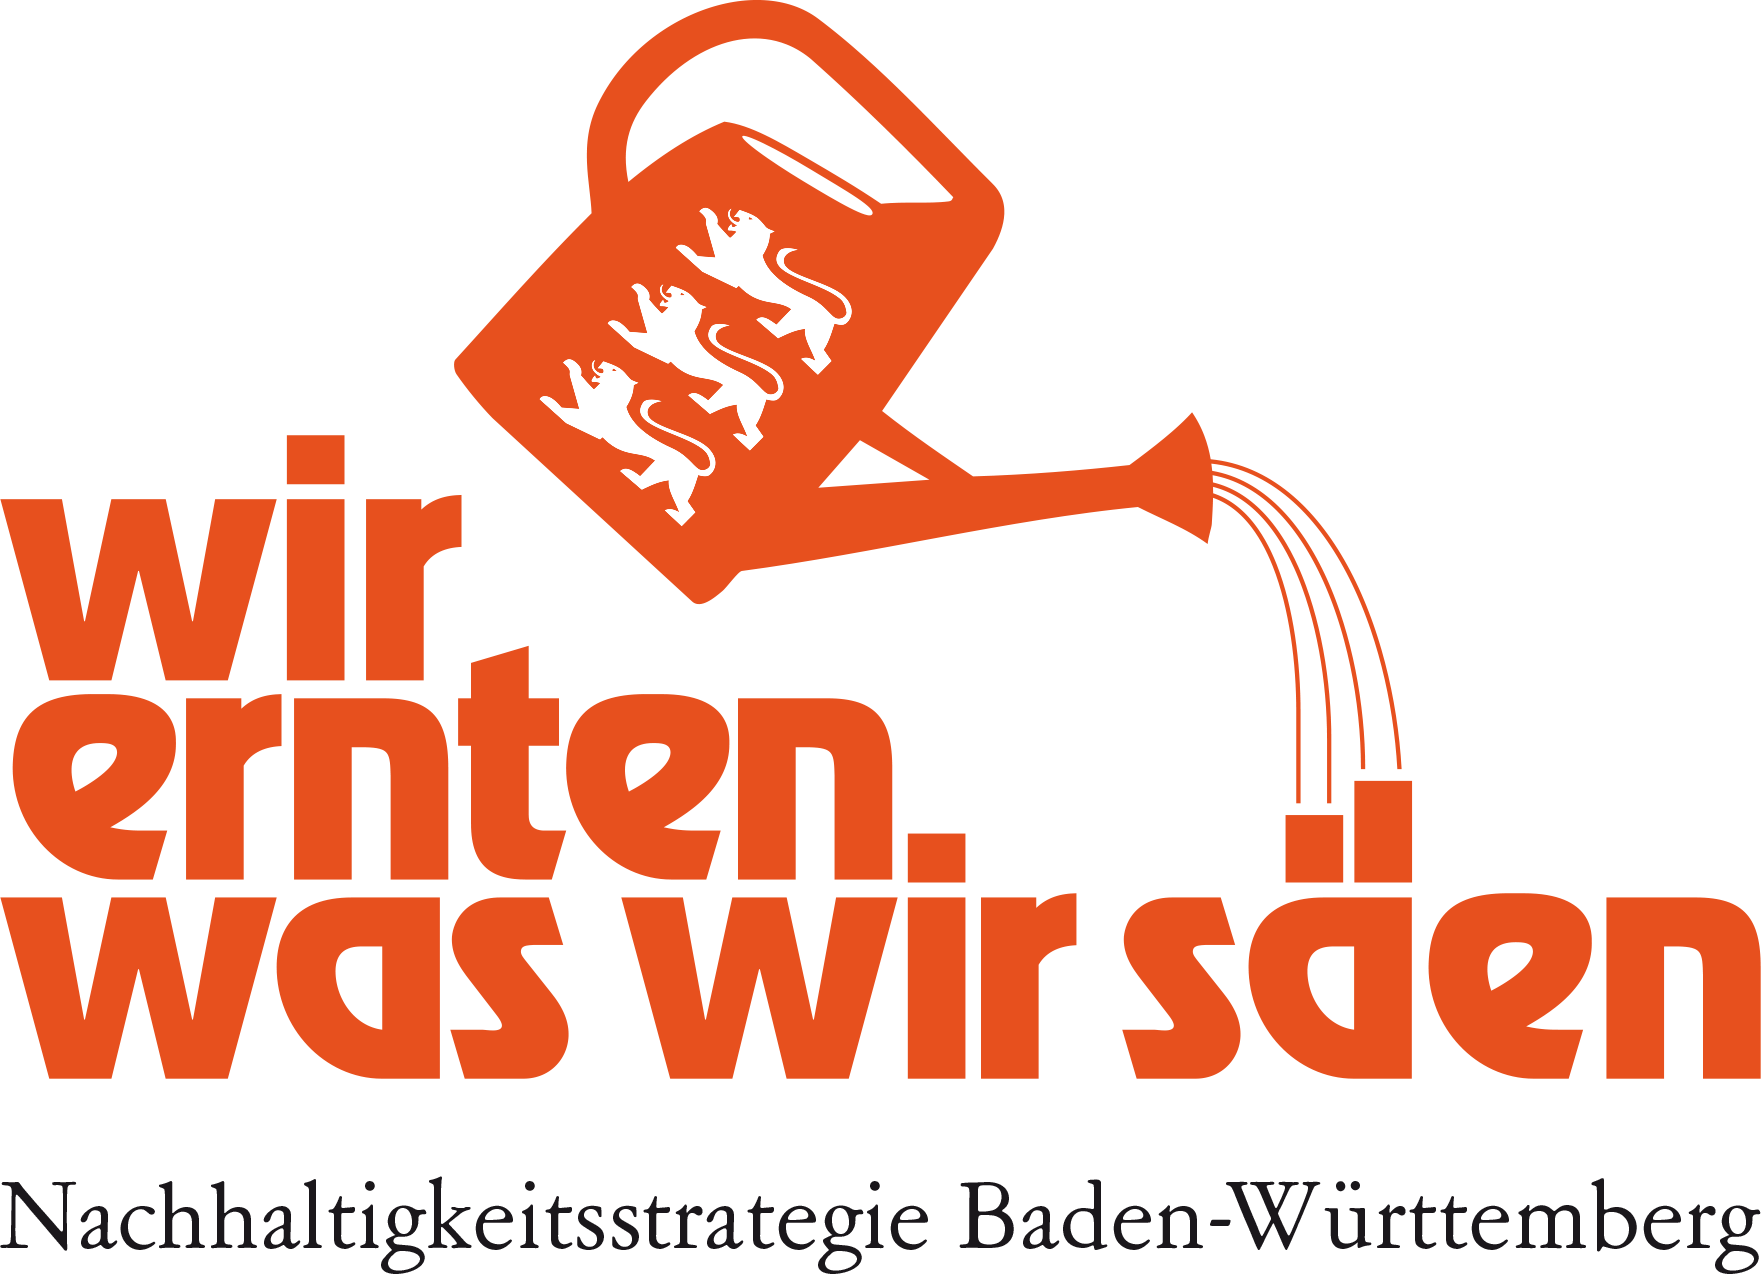 Nachhaltigkeitsstrategie Baden-Württemberg